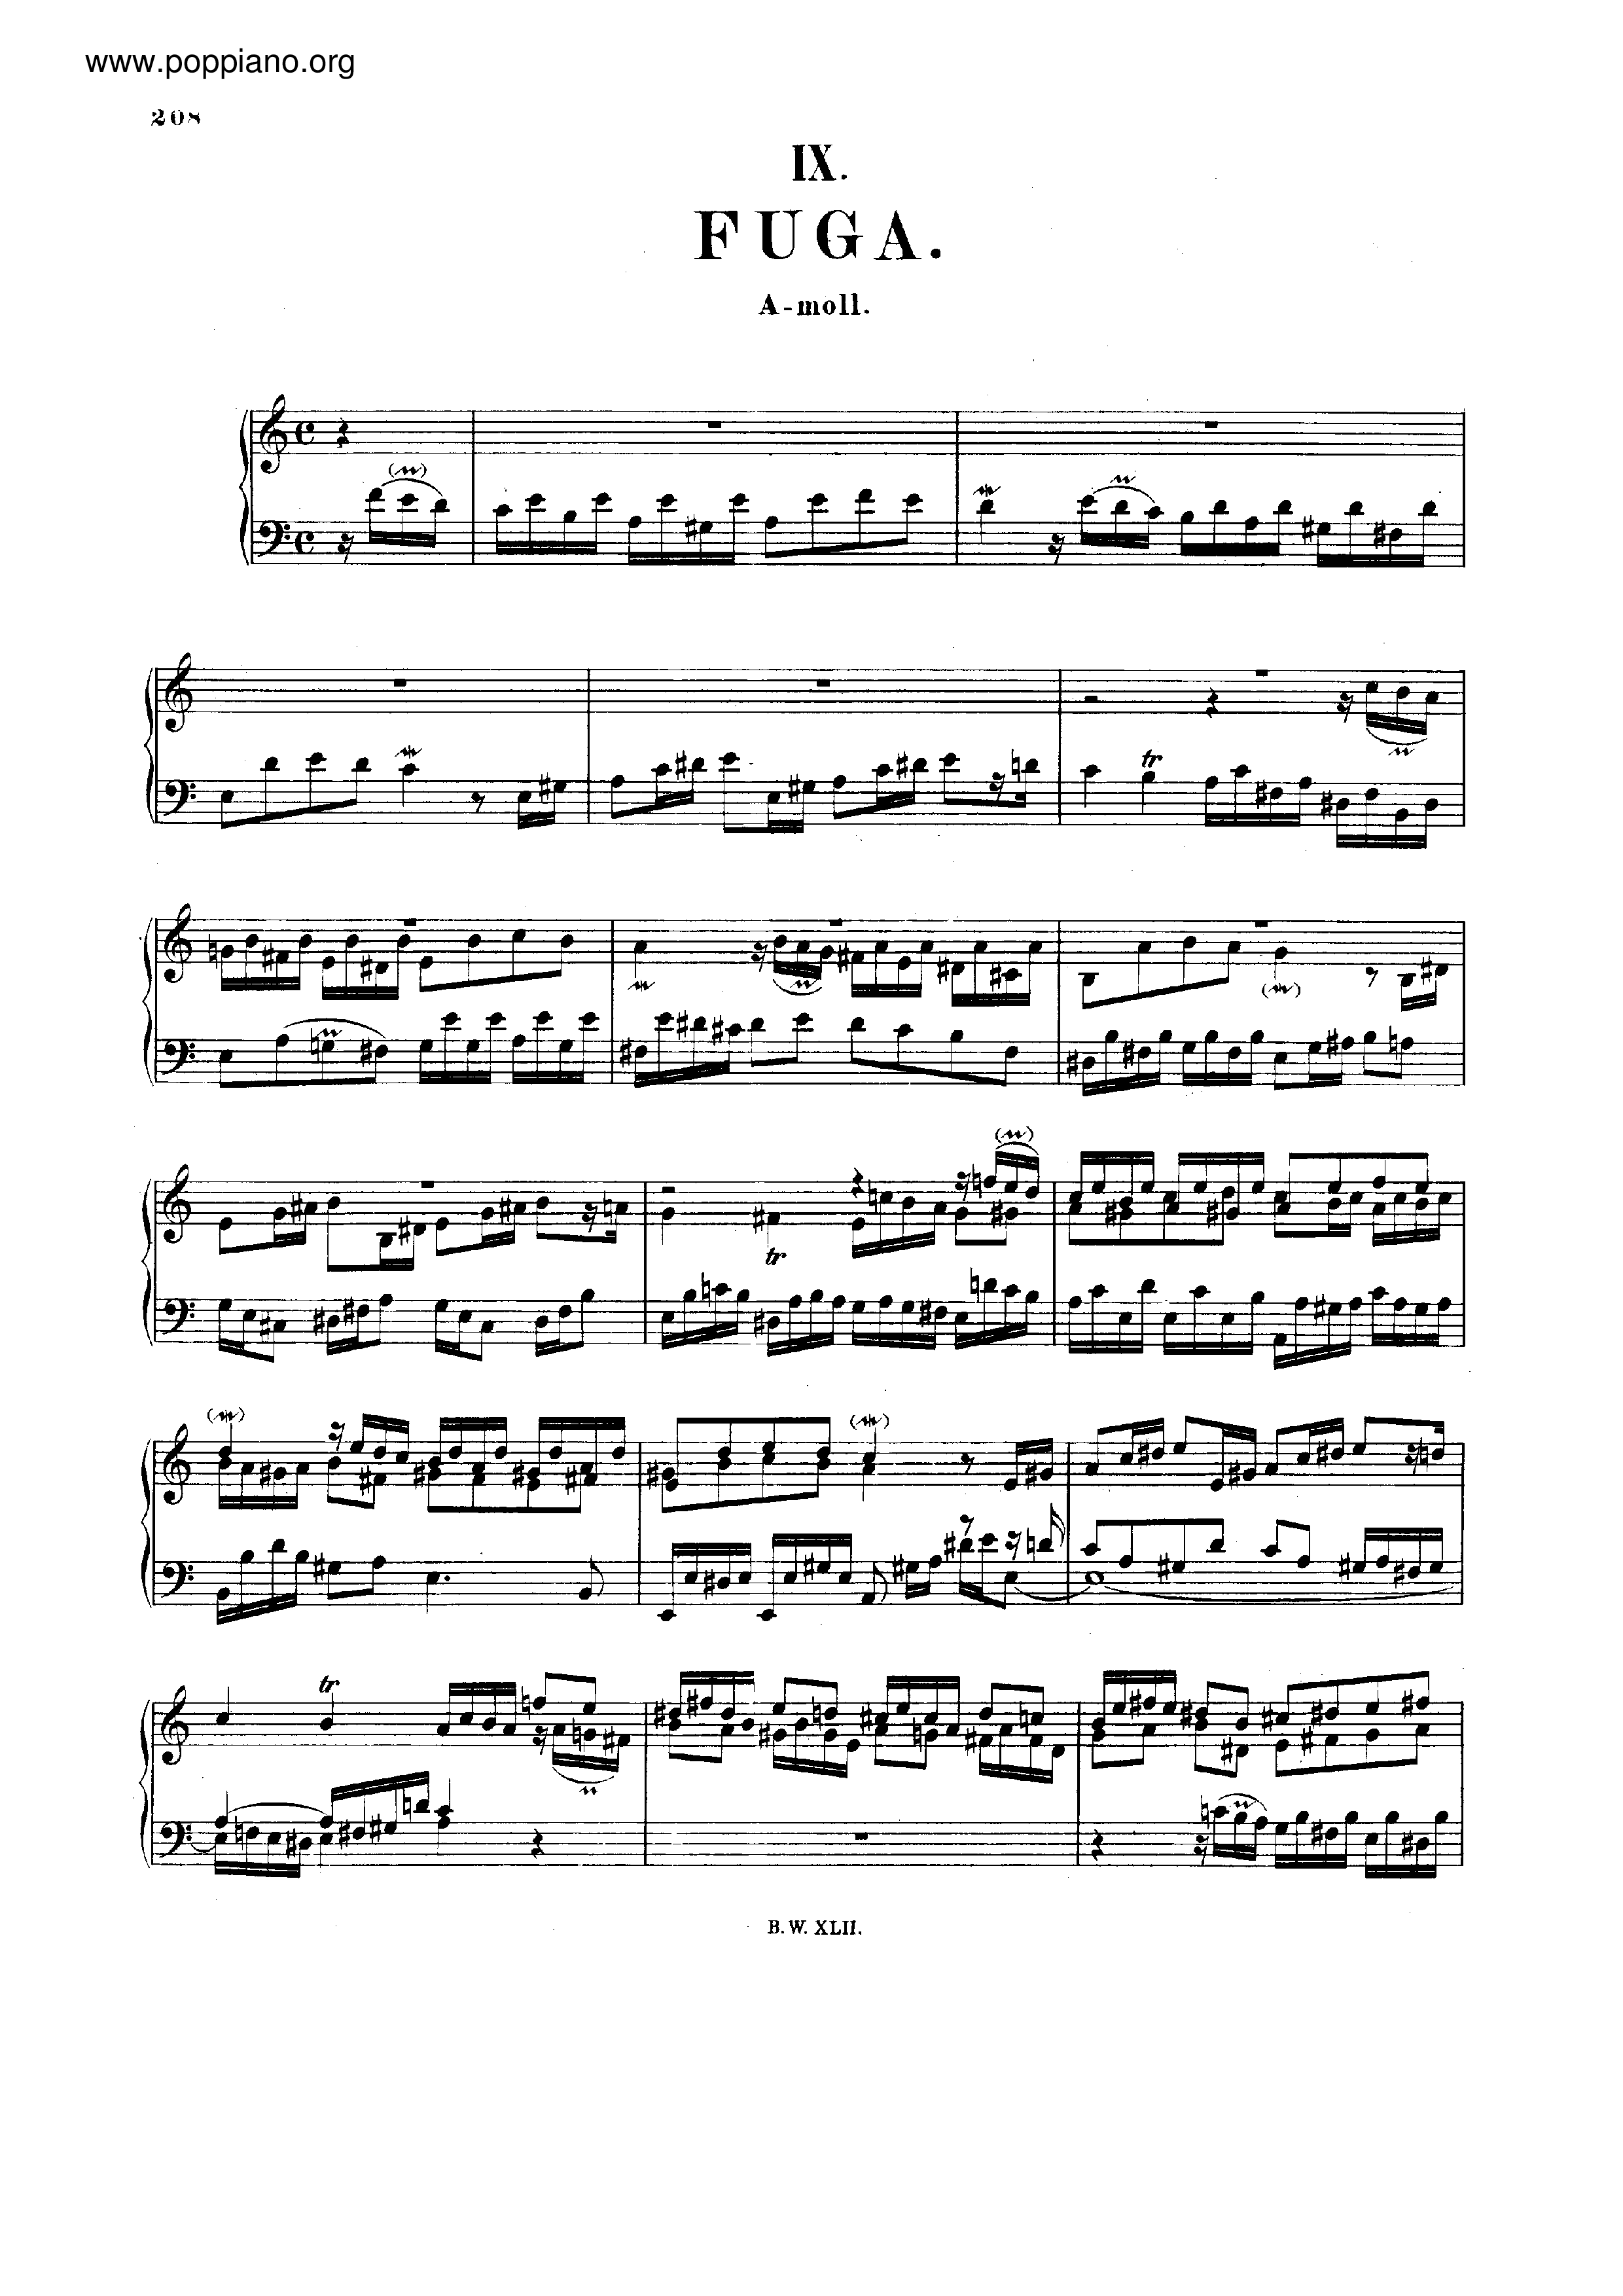 Fugue in A minor, BWV 959 Score